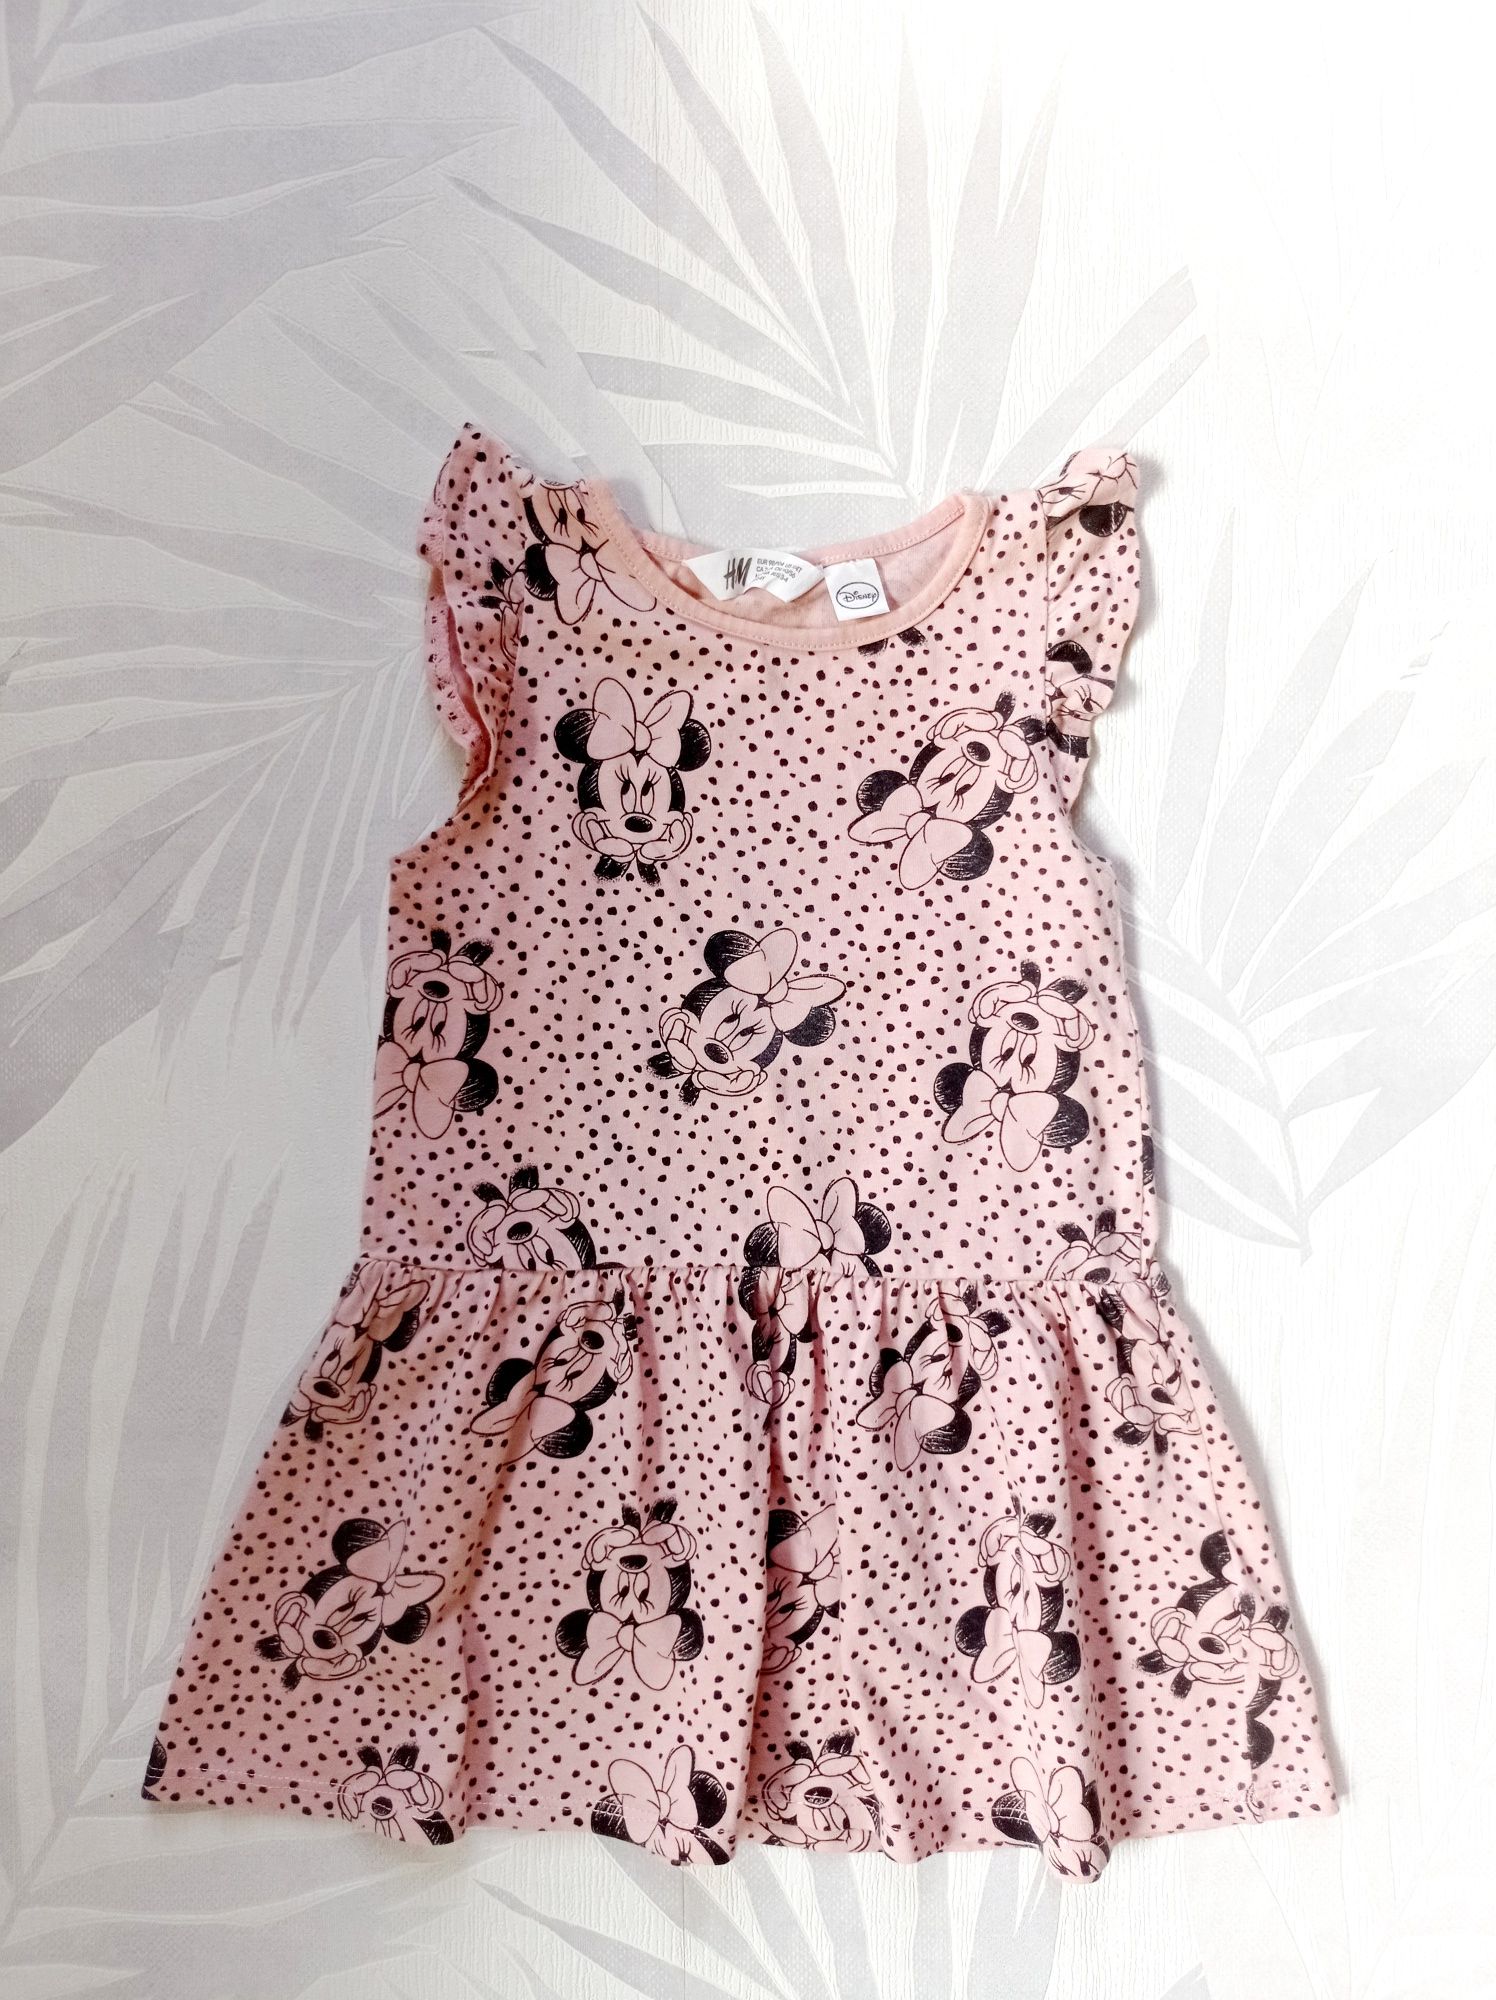 Рокля мини маус, рокля дисни, Minnie Mouse рокля, розова рокля